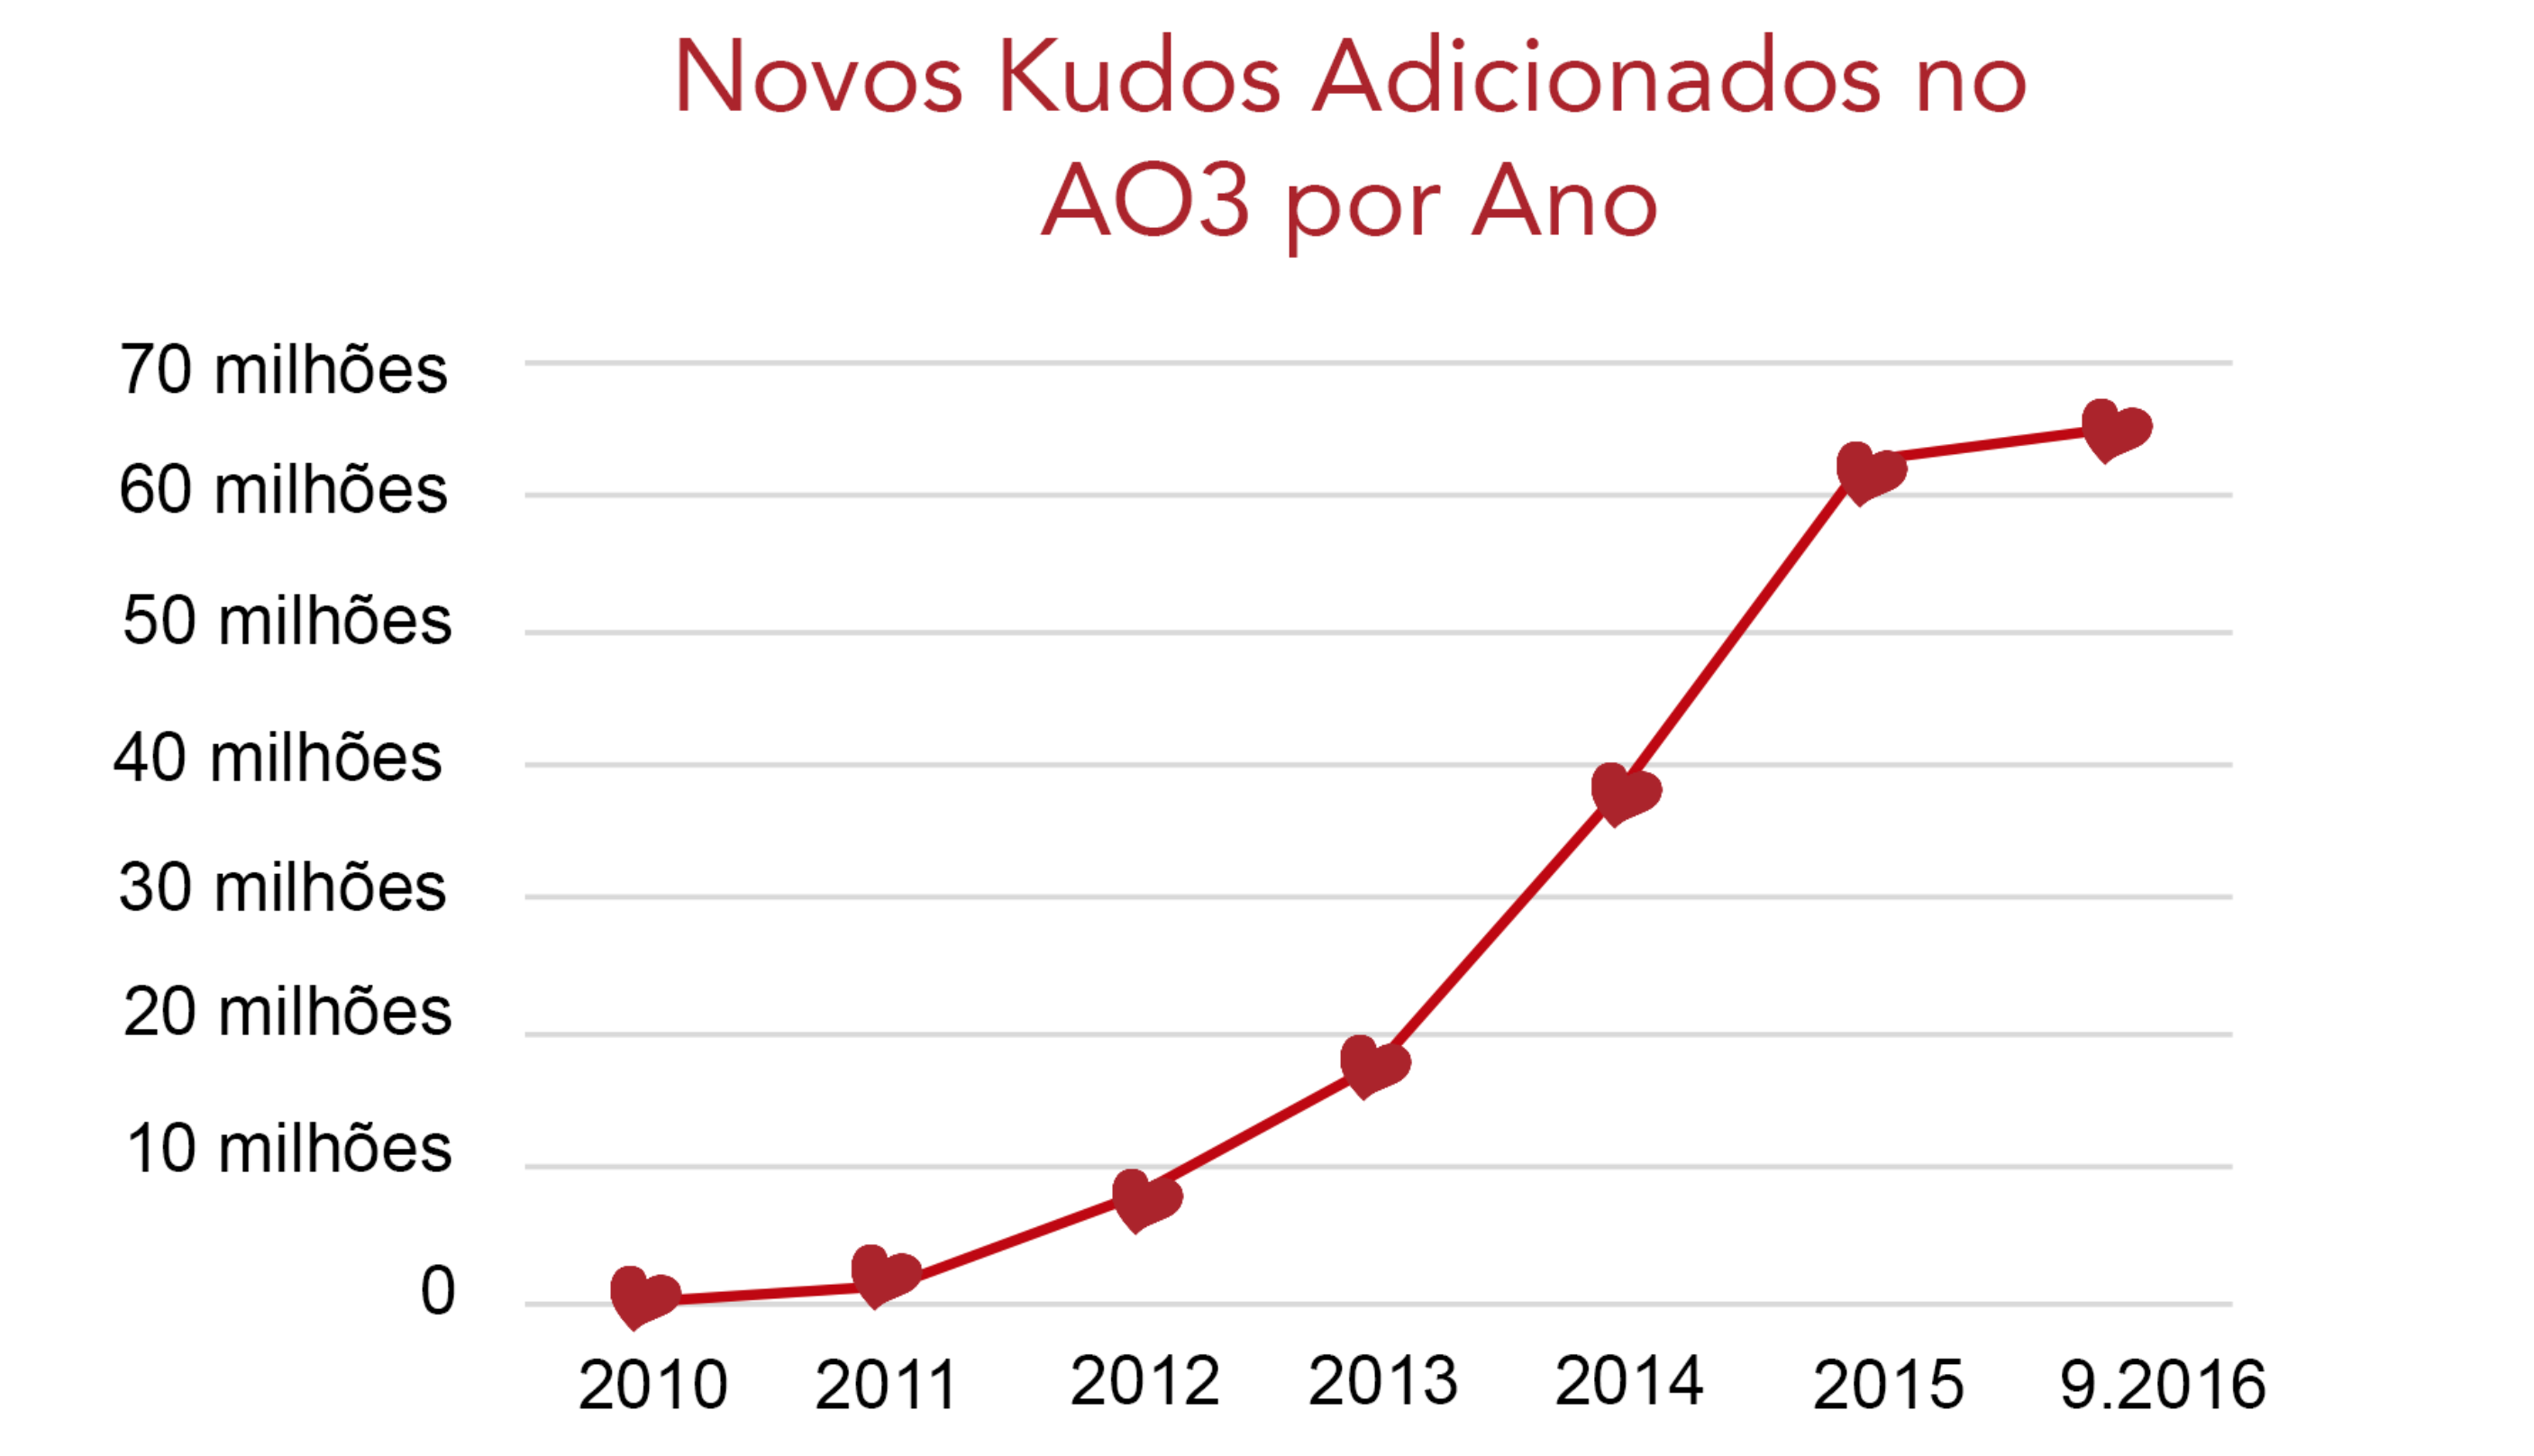 Gráfico do aumento do número de kudos no AO3, desde zero em 2010 até mais de 60 milhões em setembro de 2016.